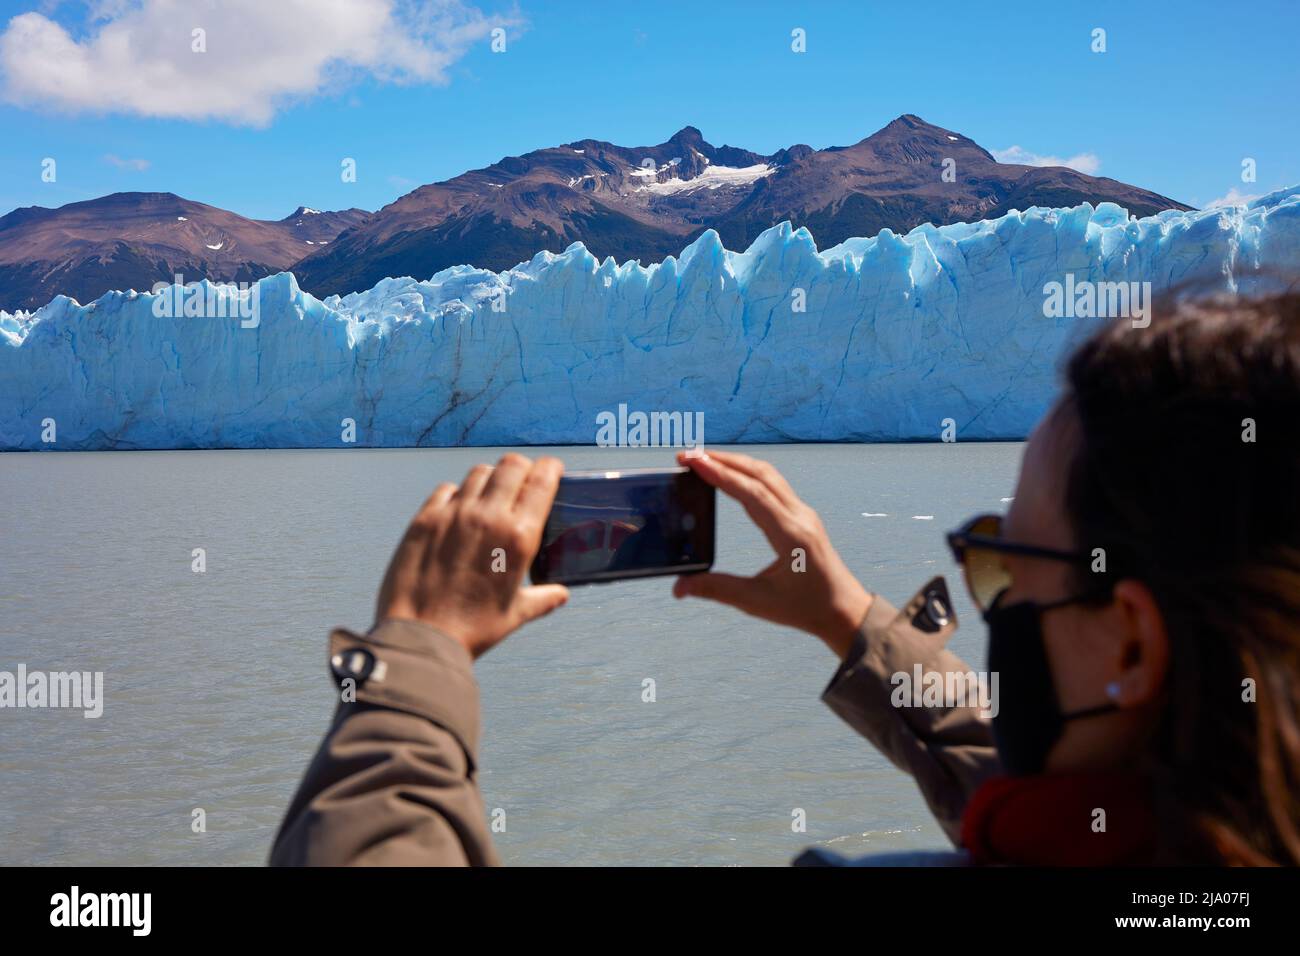 Un turista fotografiando el glaciar Perito Moreno durante la pandemia de Covid, El Calafate, Santa Cruz, Argentina. Foto de stock